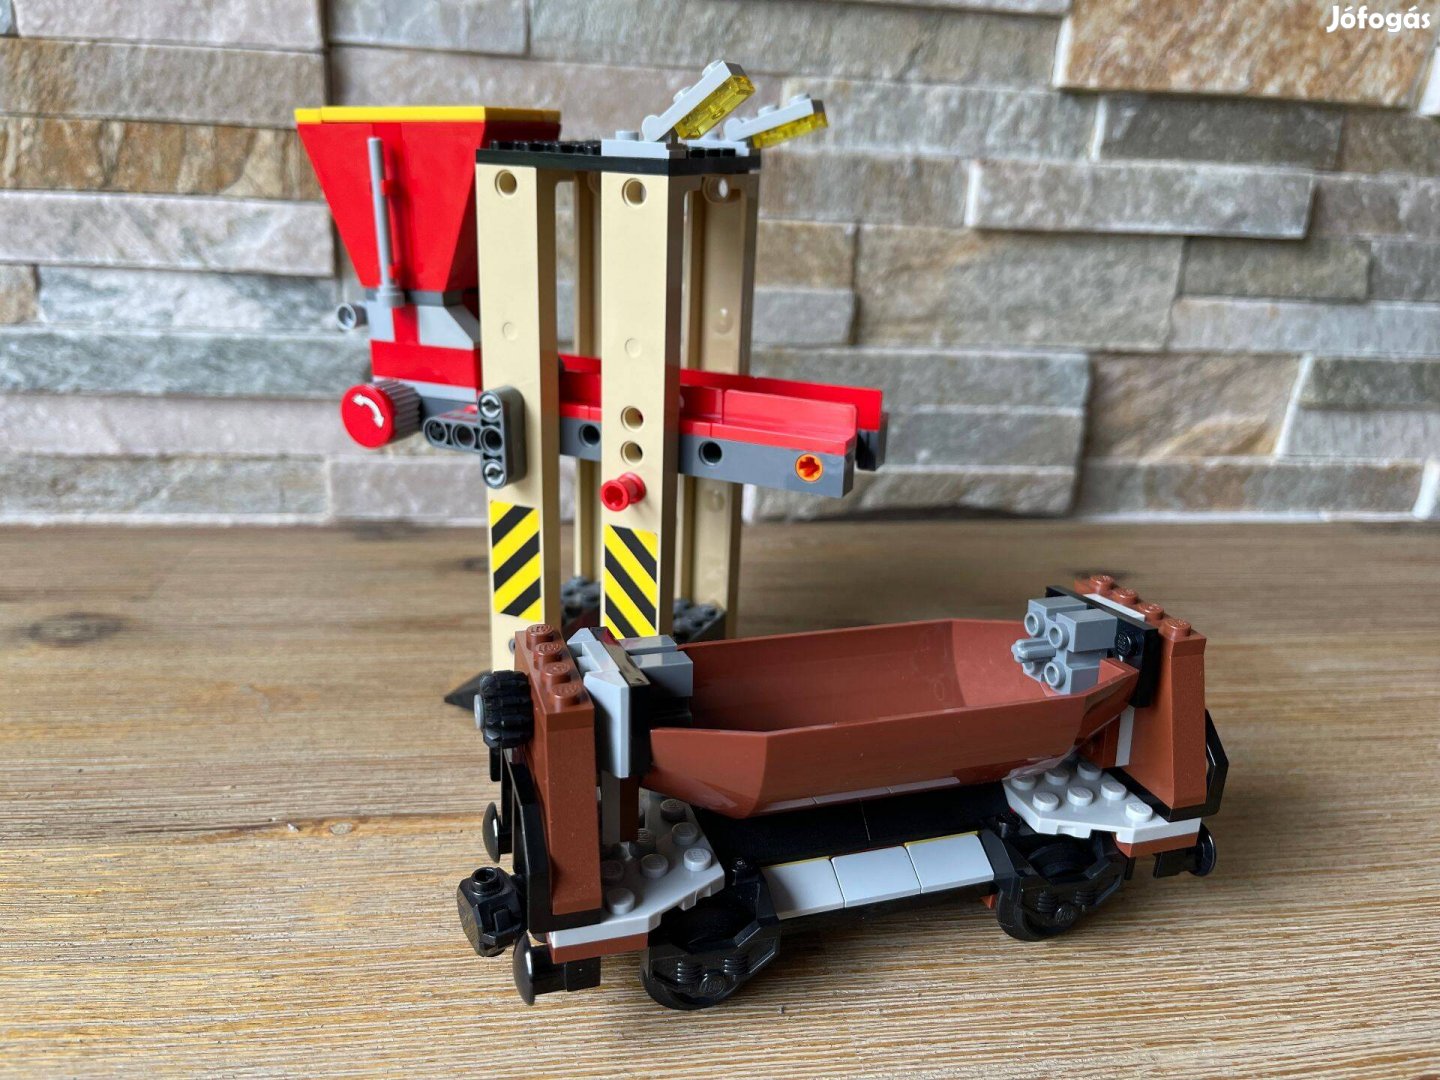 Lego vasuti vonat 3677 szenrakodo vasuti vonat vagon + rakodo